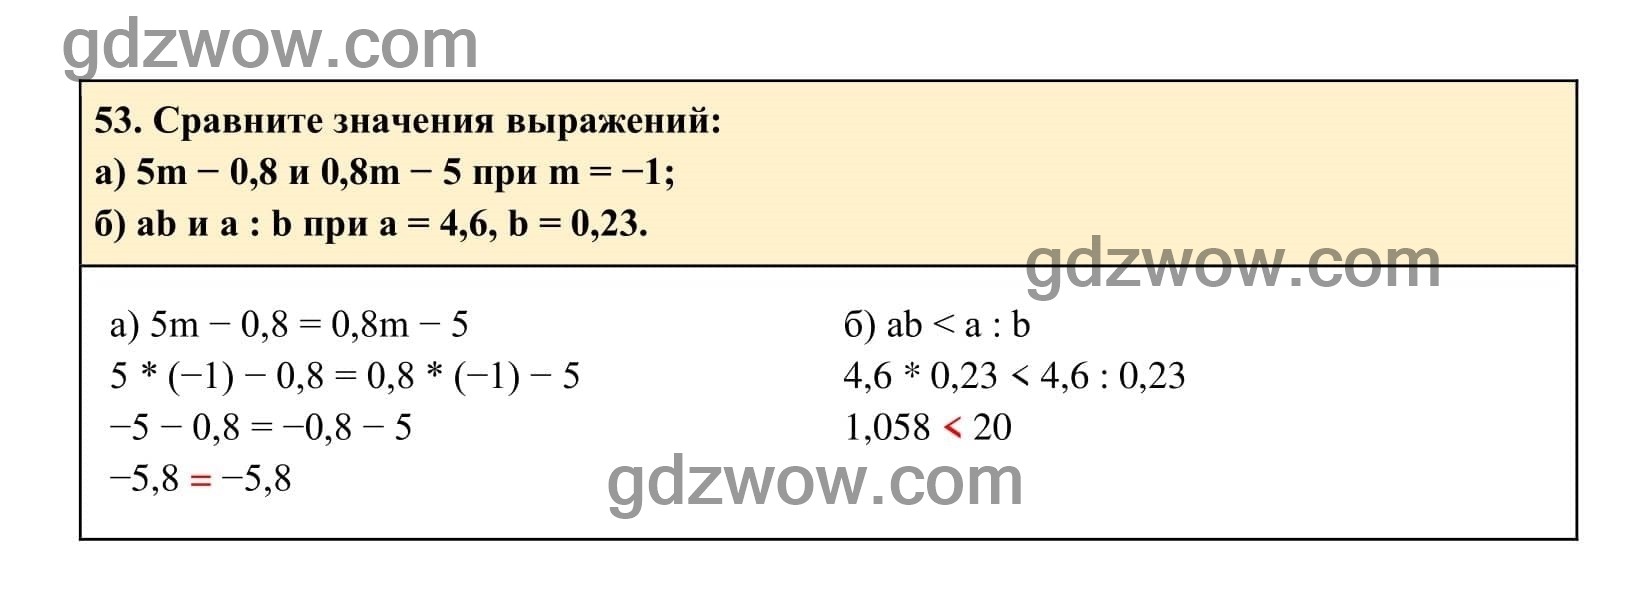 Упражнение 53 - ГДЗ по Алгебре 7 класс Учебник Макарычев (решебник) - GDZwow